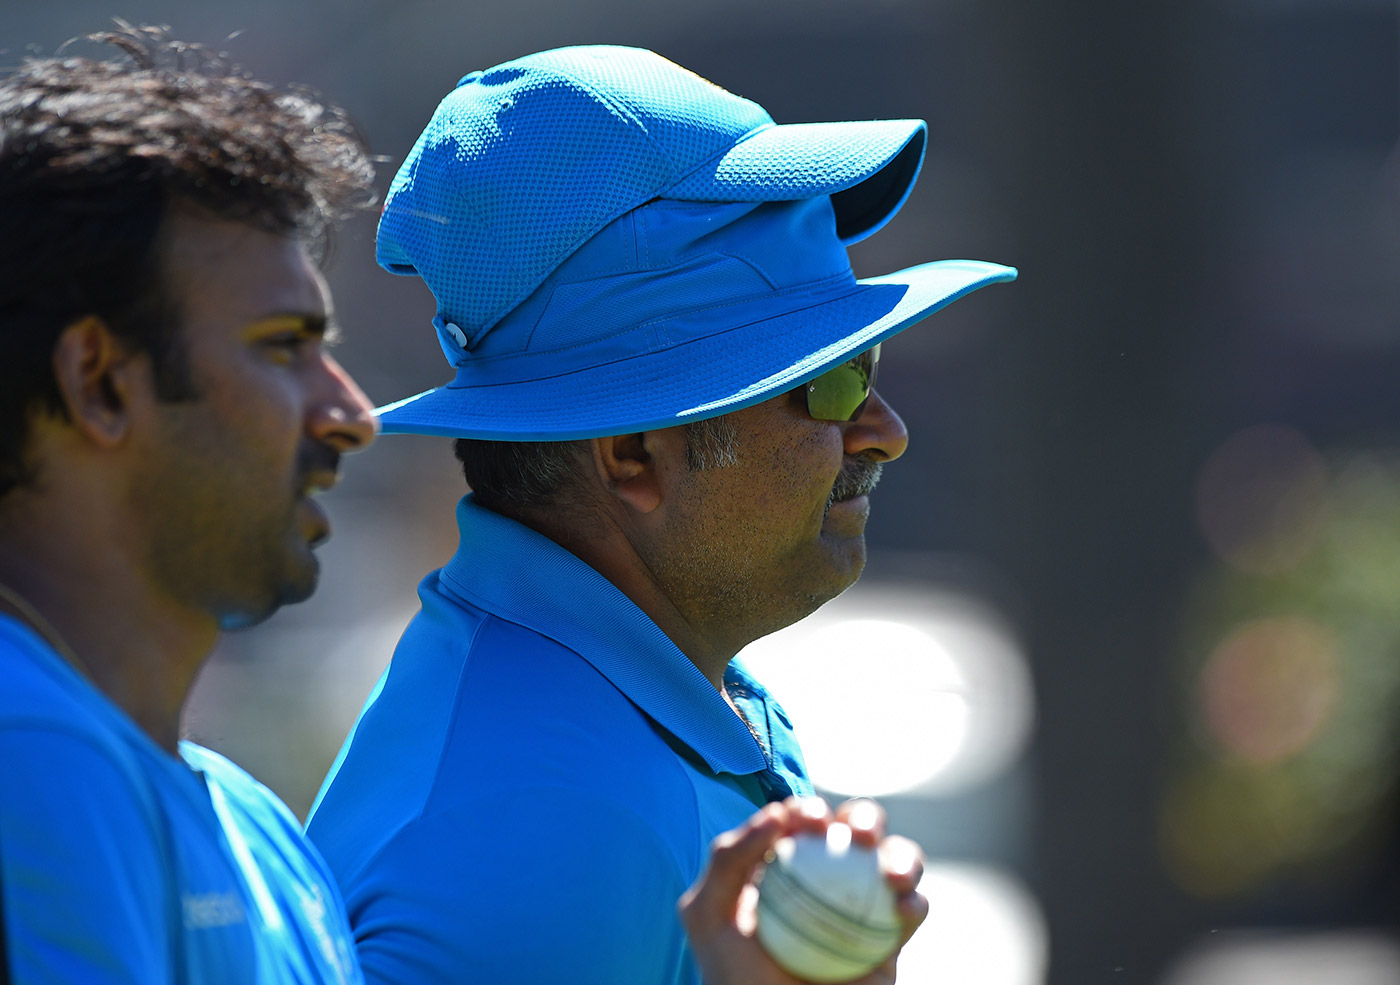 बीसीसीआई ने लिया U-टर्न जहीर खान नहीं होंगे फुल टाइम भारतीय टीम के गेंदबाजी कोच 4